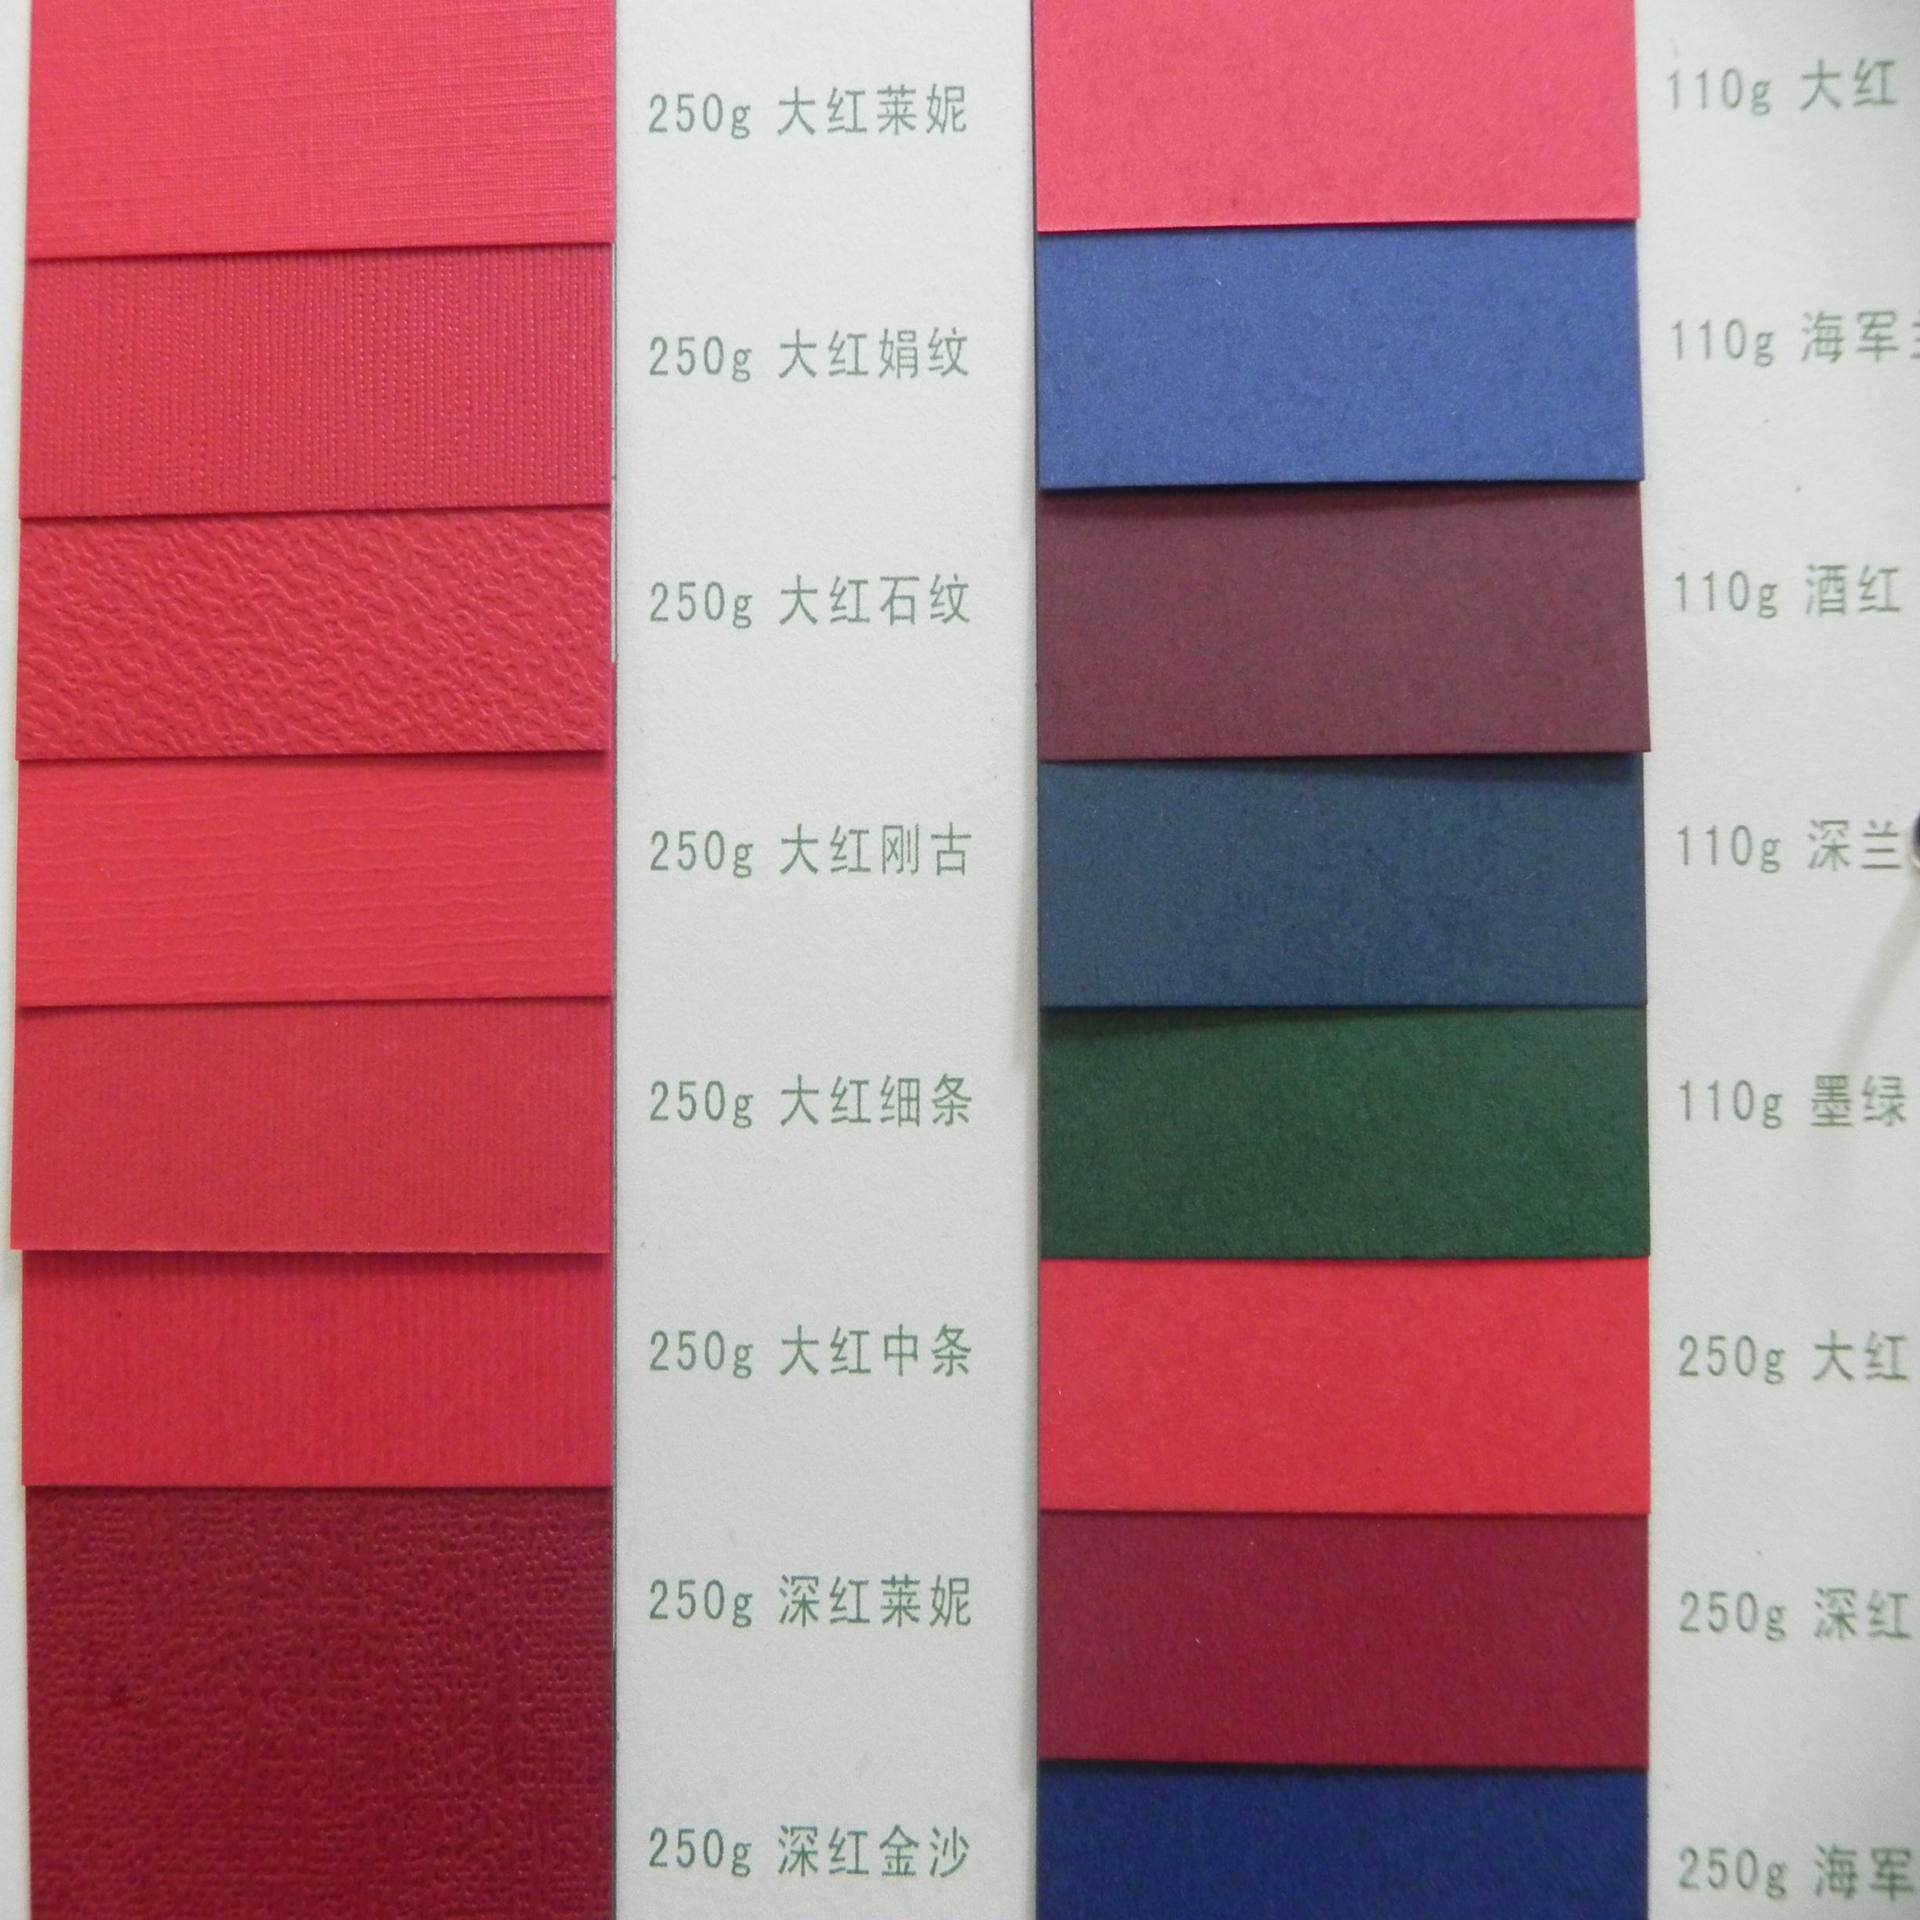 厂价批发彩色卡纸 原浆红卡纸蓝卡纸双面厚卡纸 印刷包装特种纸